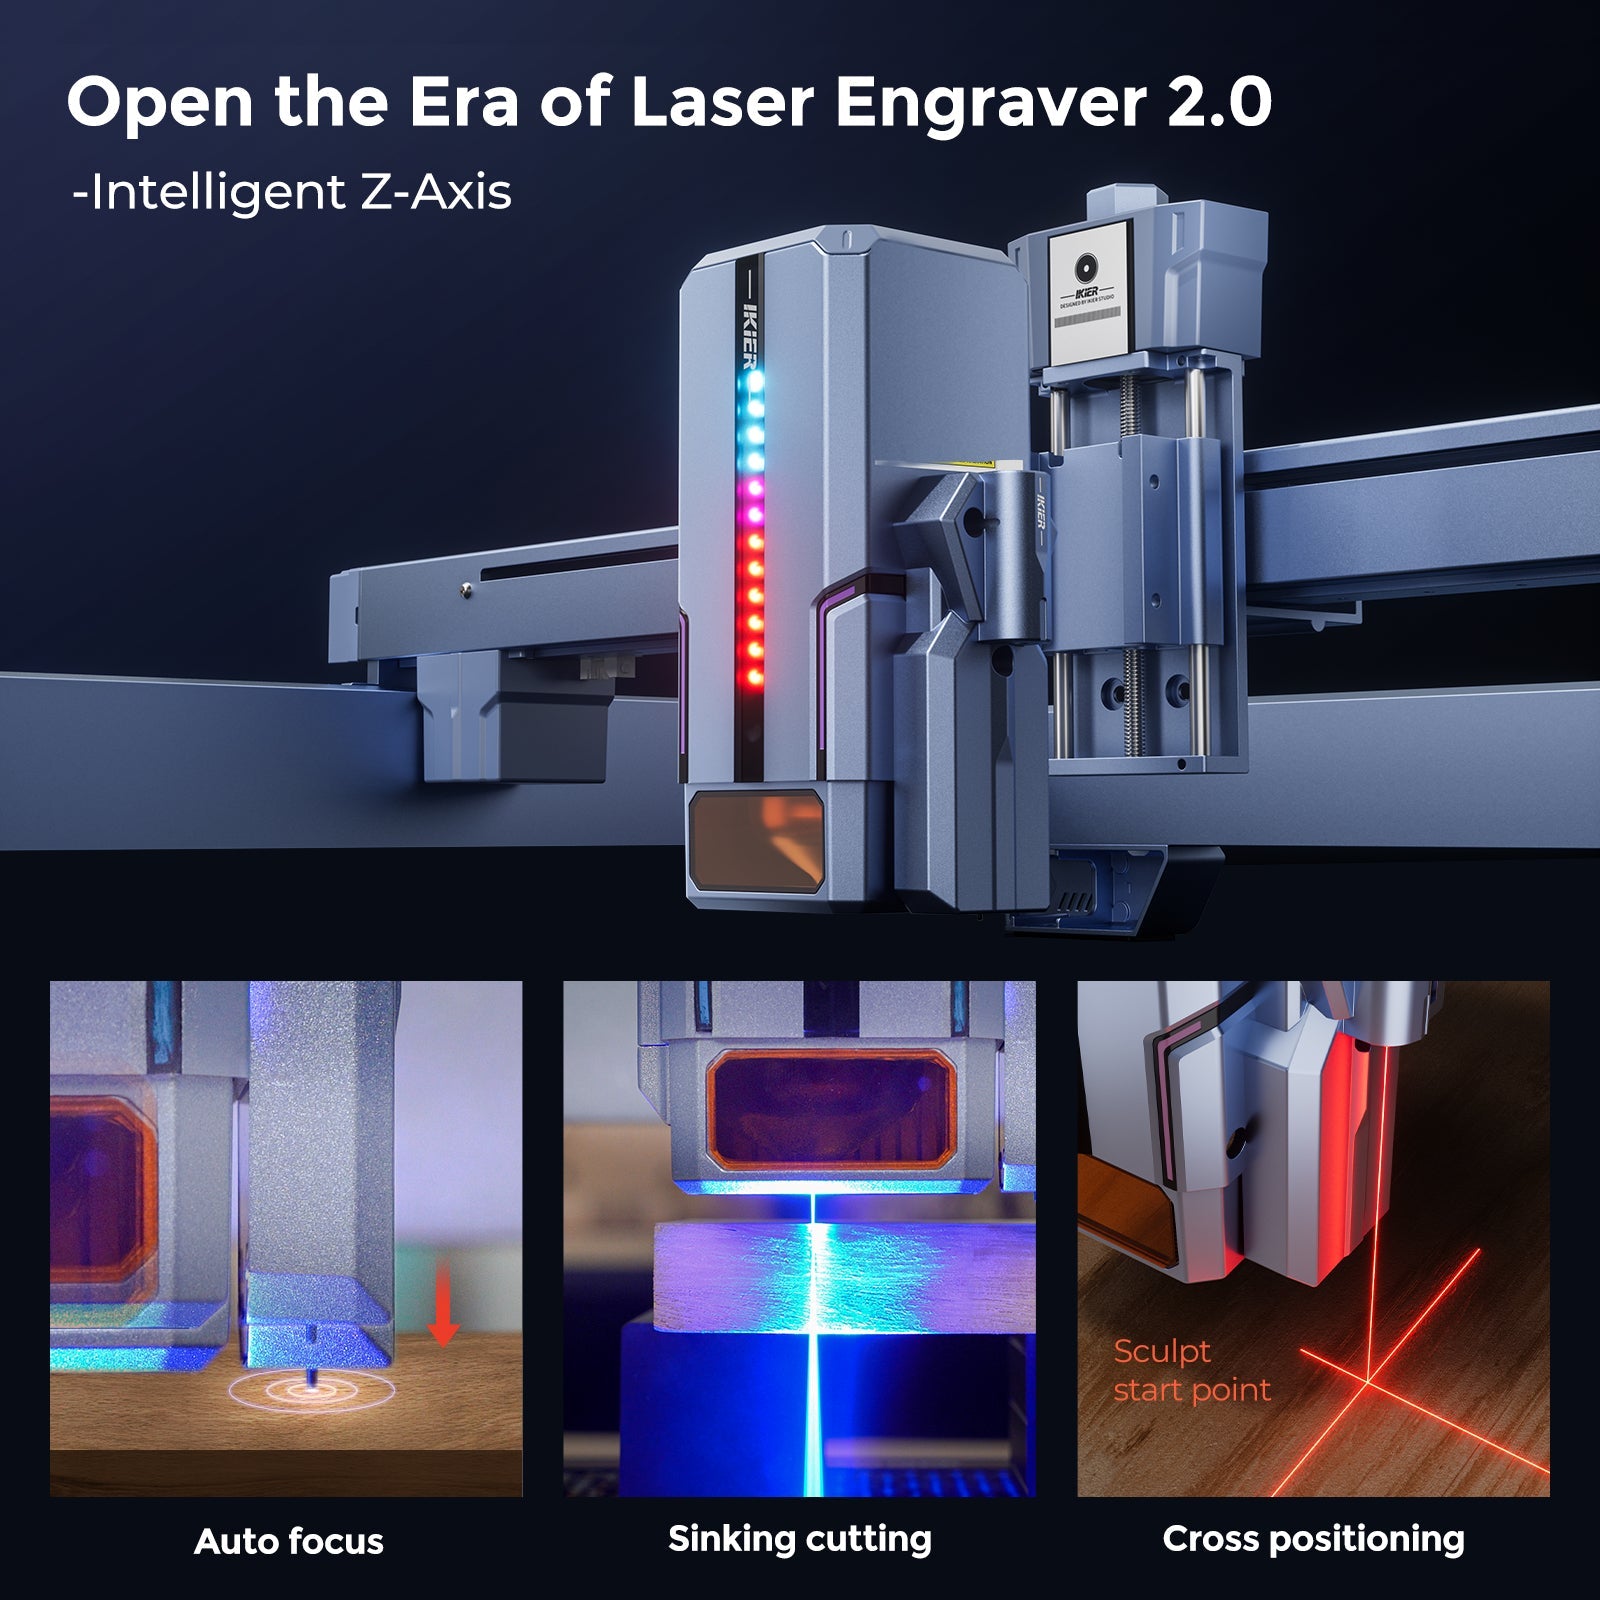 iKier K1 12W Laser Engraver